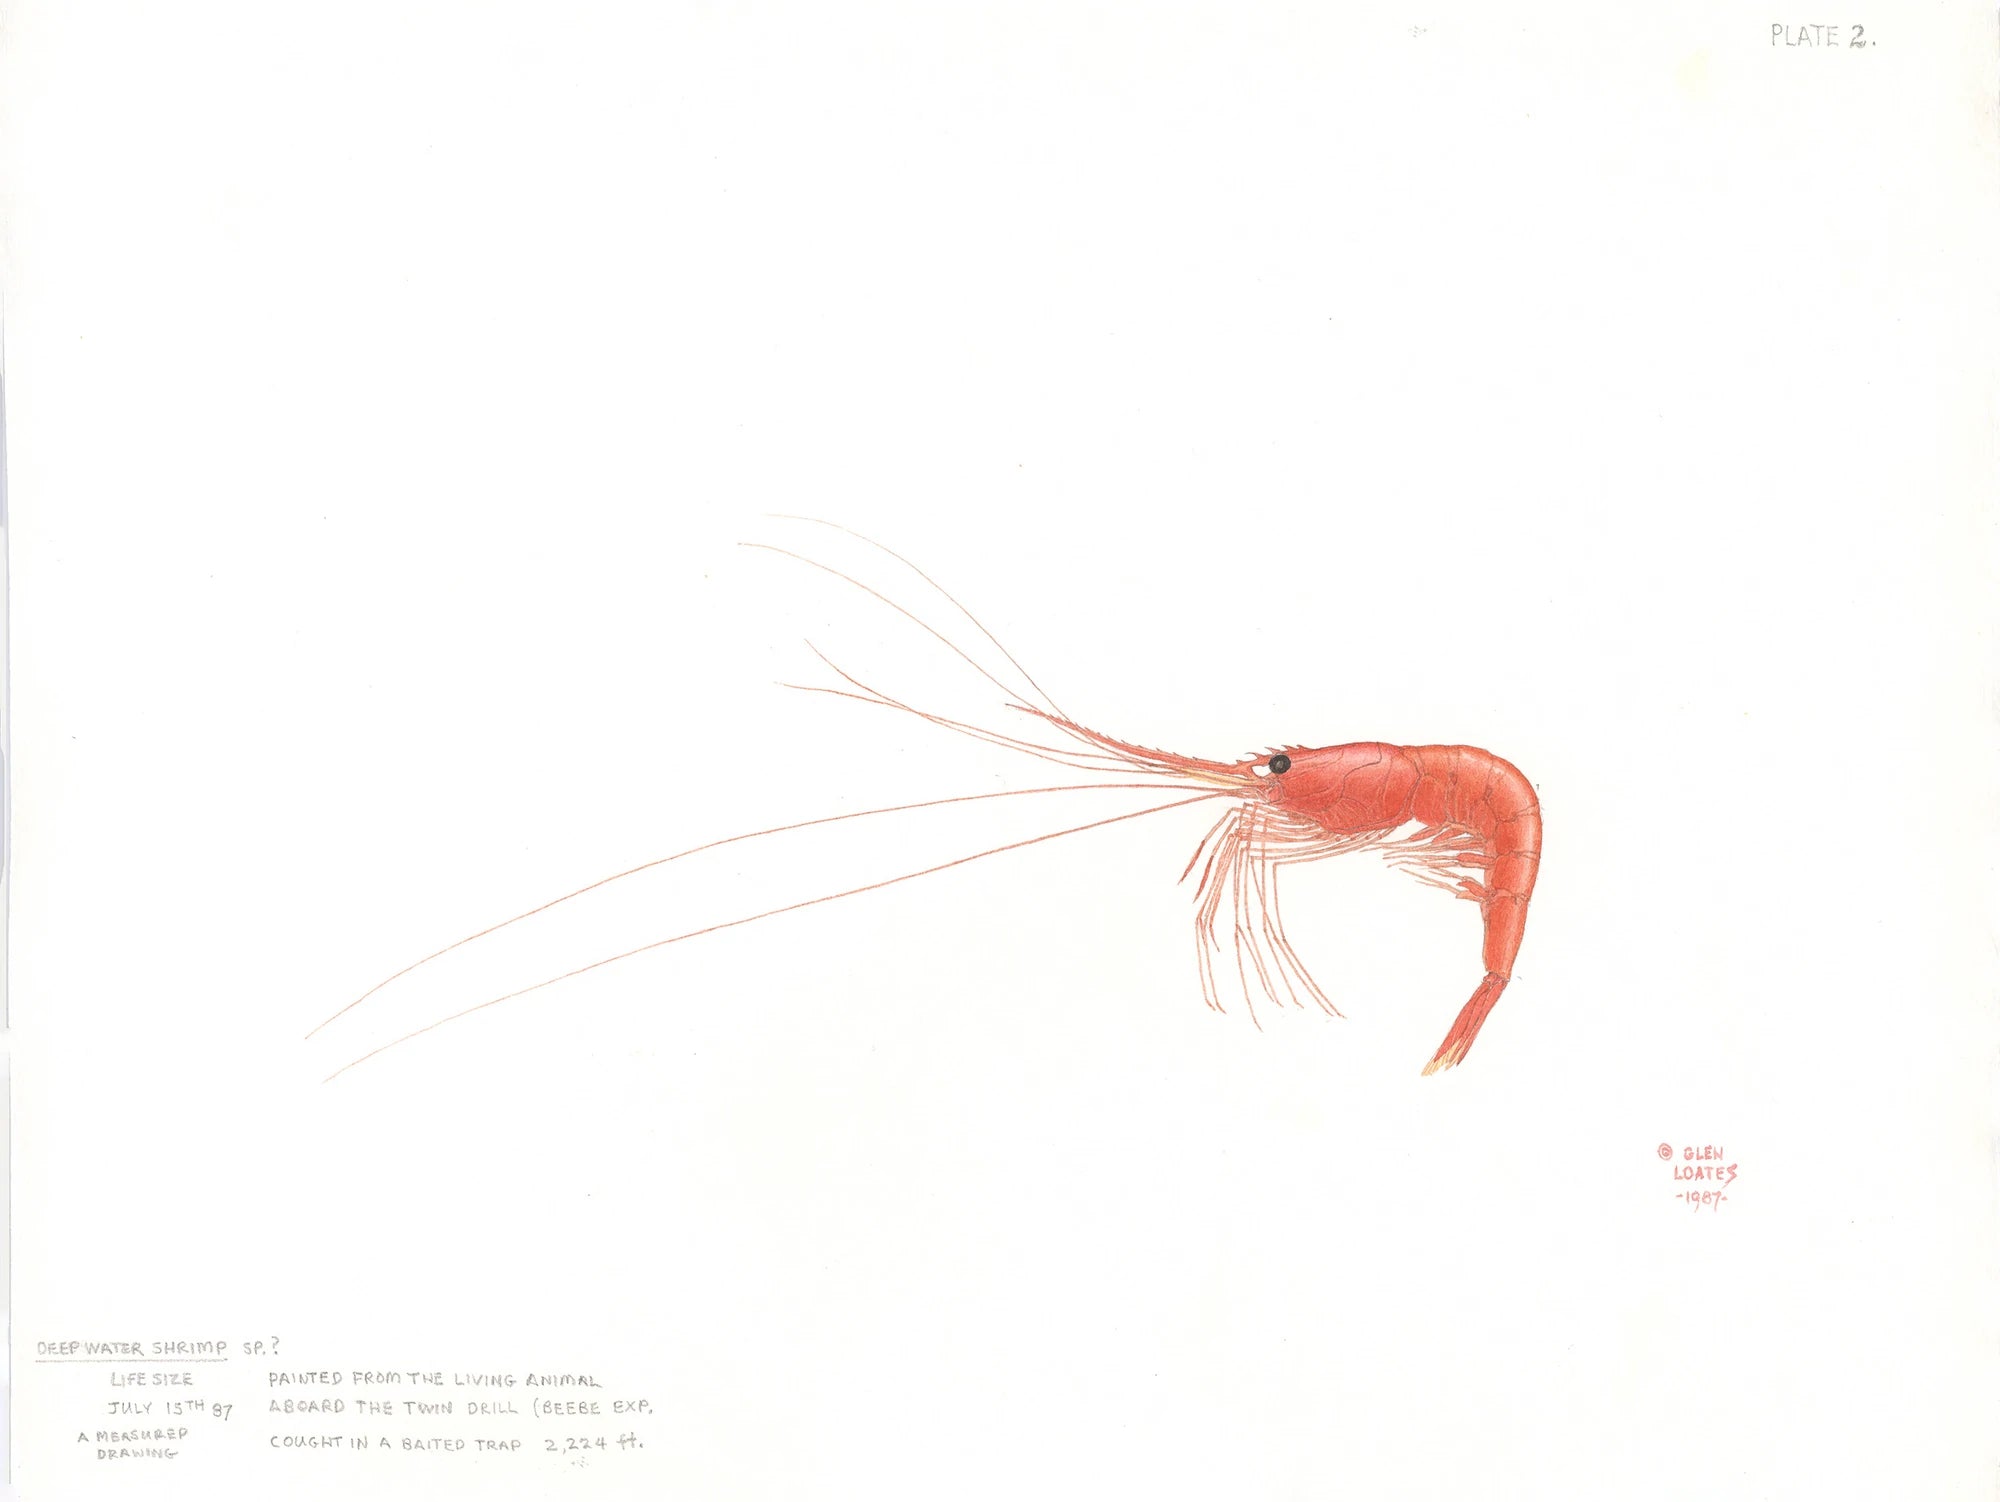 Deep water Shrimp by Glen Loates